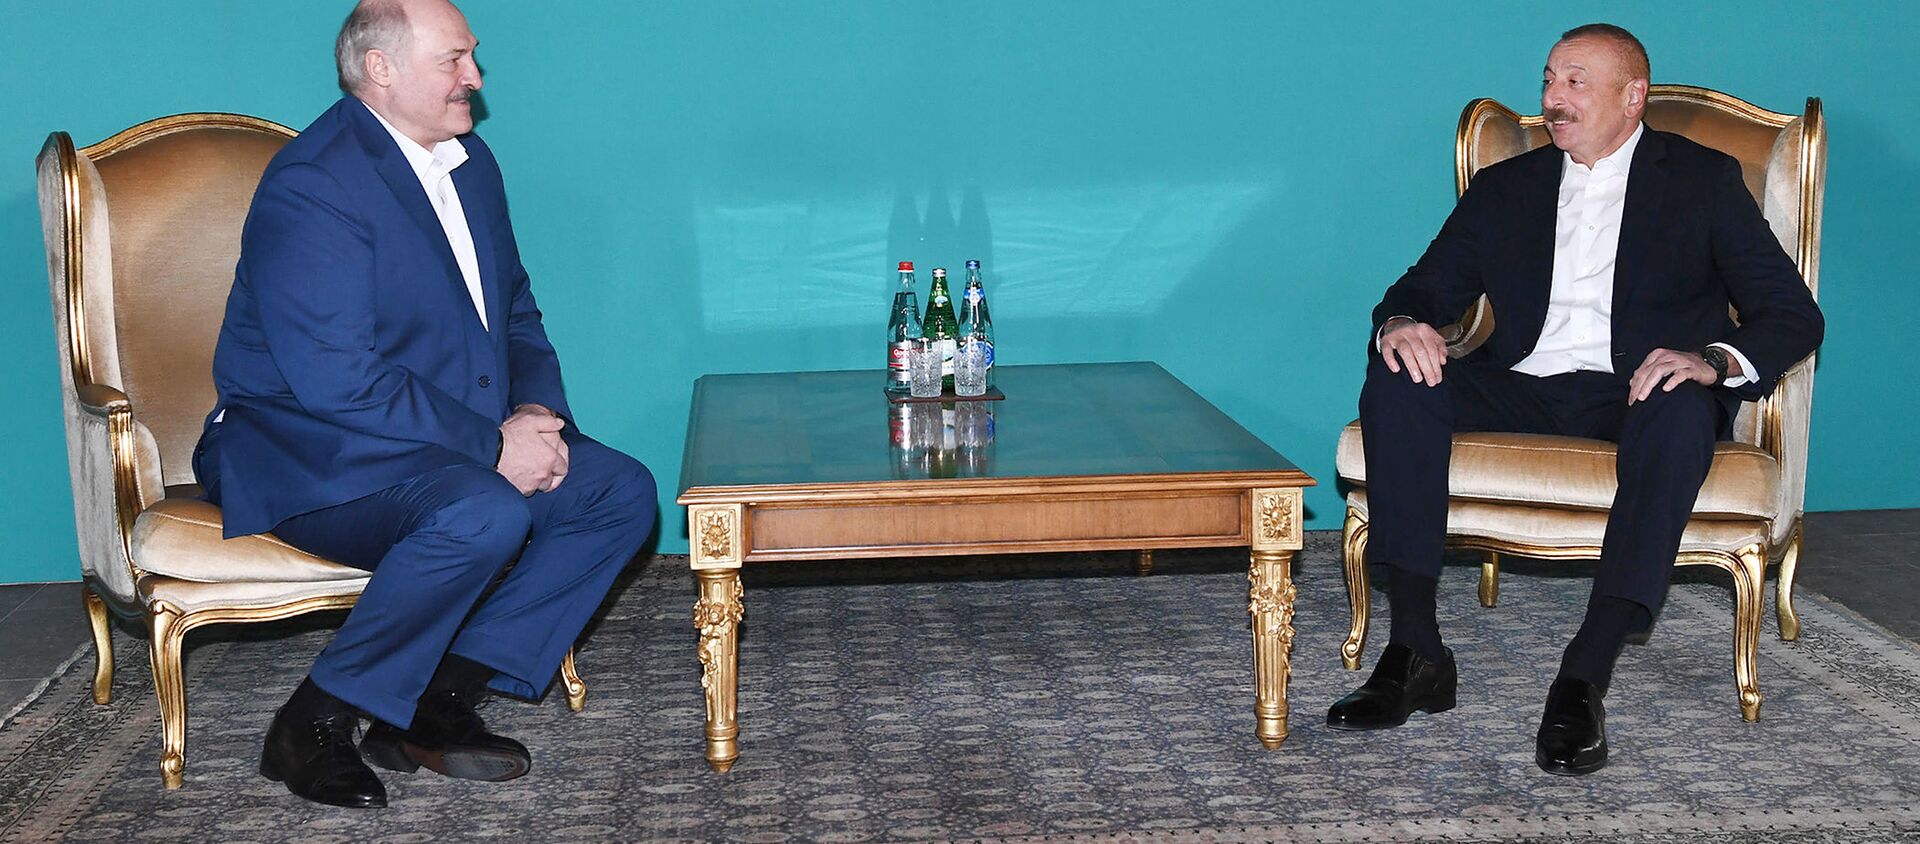 Ильхам Алиев и Александр Лукашенко провели неформальную встречу - Sputnik Азербайджан, 1920, 13.04.2021